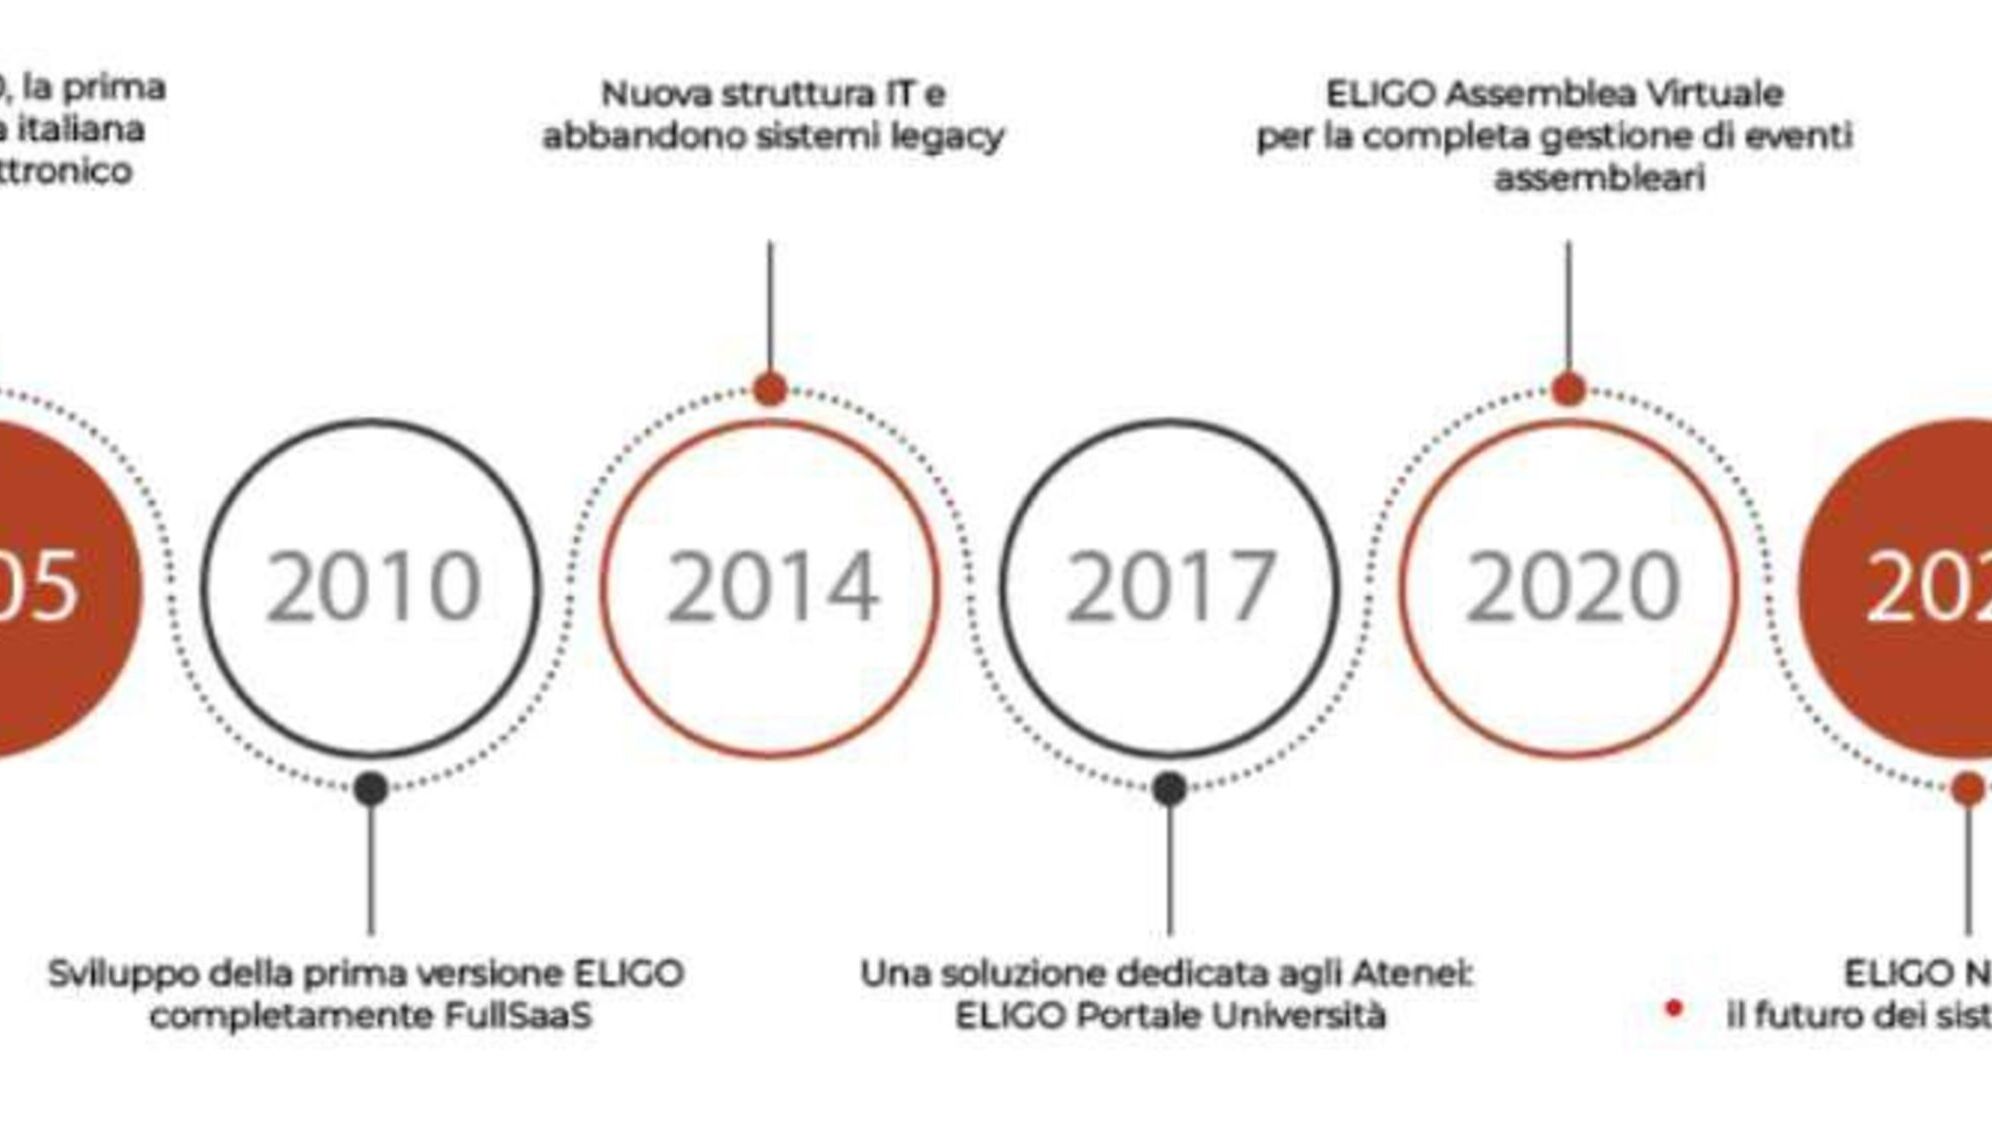 Eligo Next: Yeni elektronik ve çevrimiçi oylama platformu Eligo Next'in resmi tanıtım broşüründen alınan ilginç bir infografik